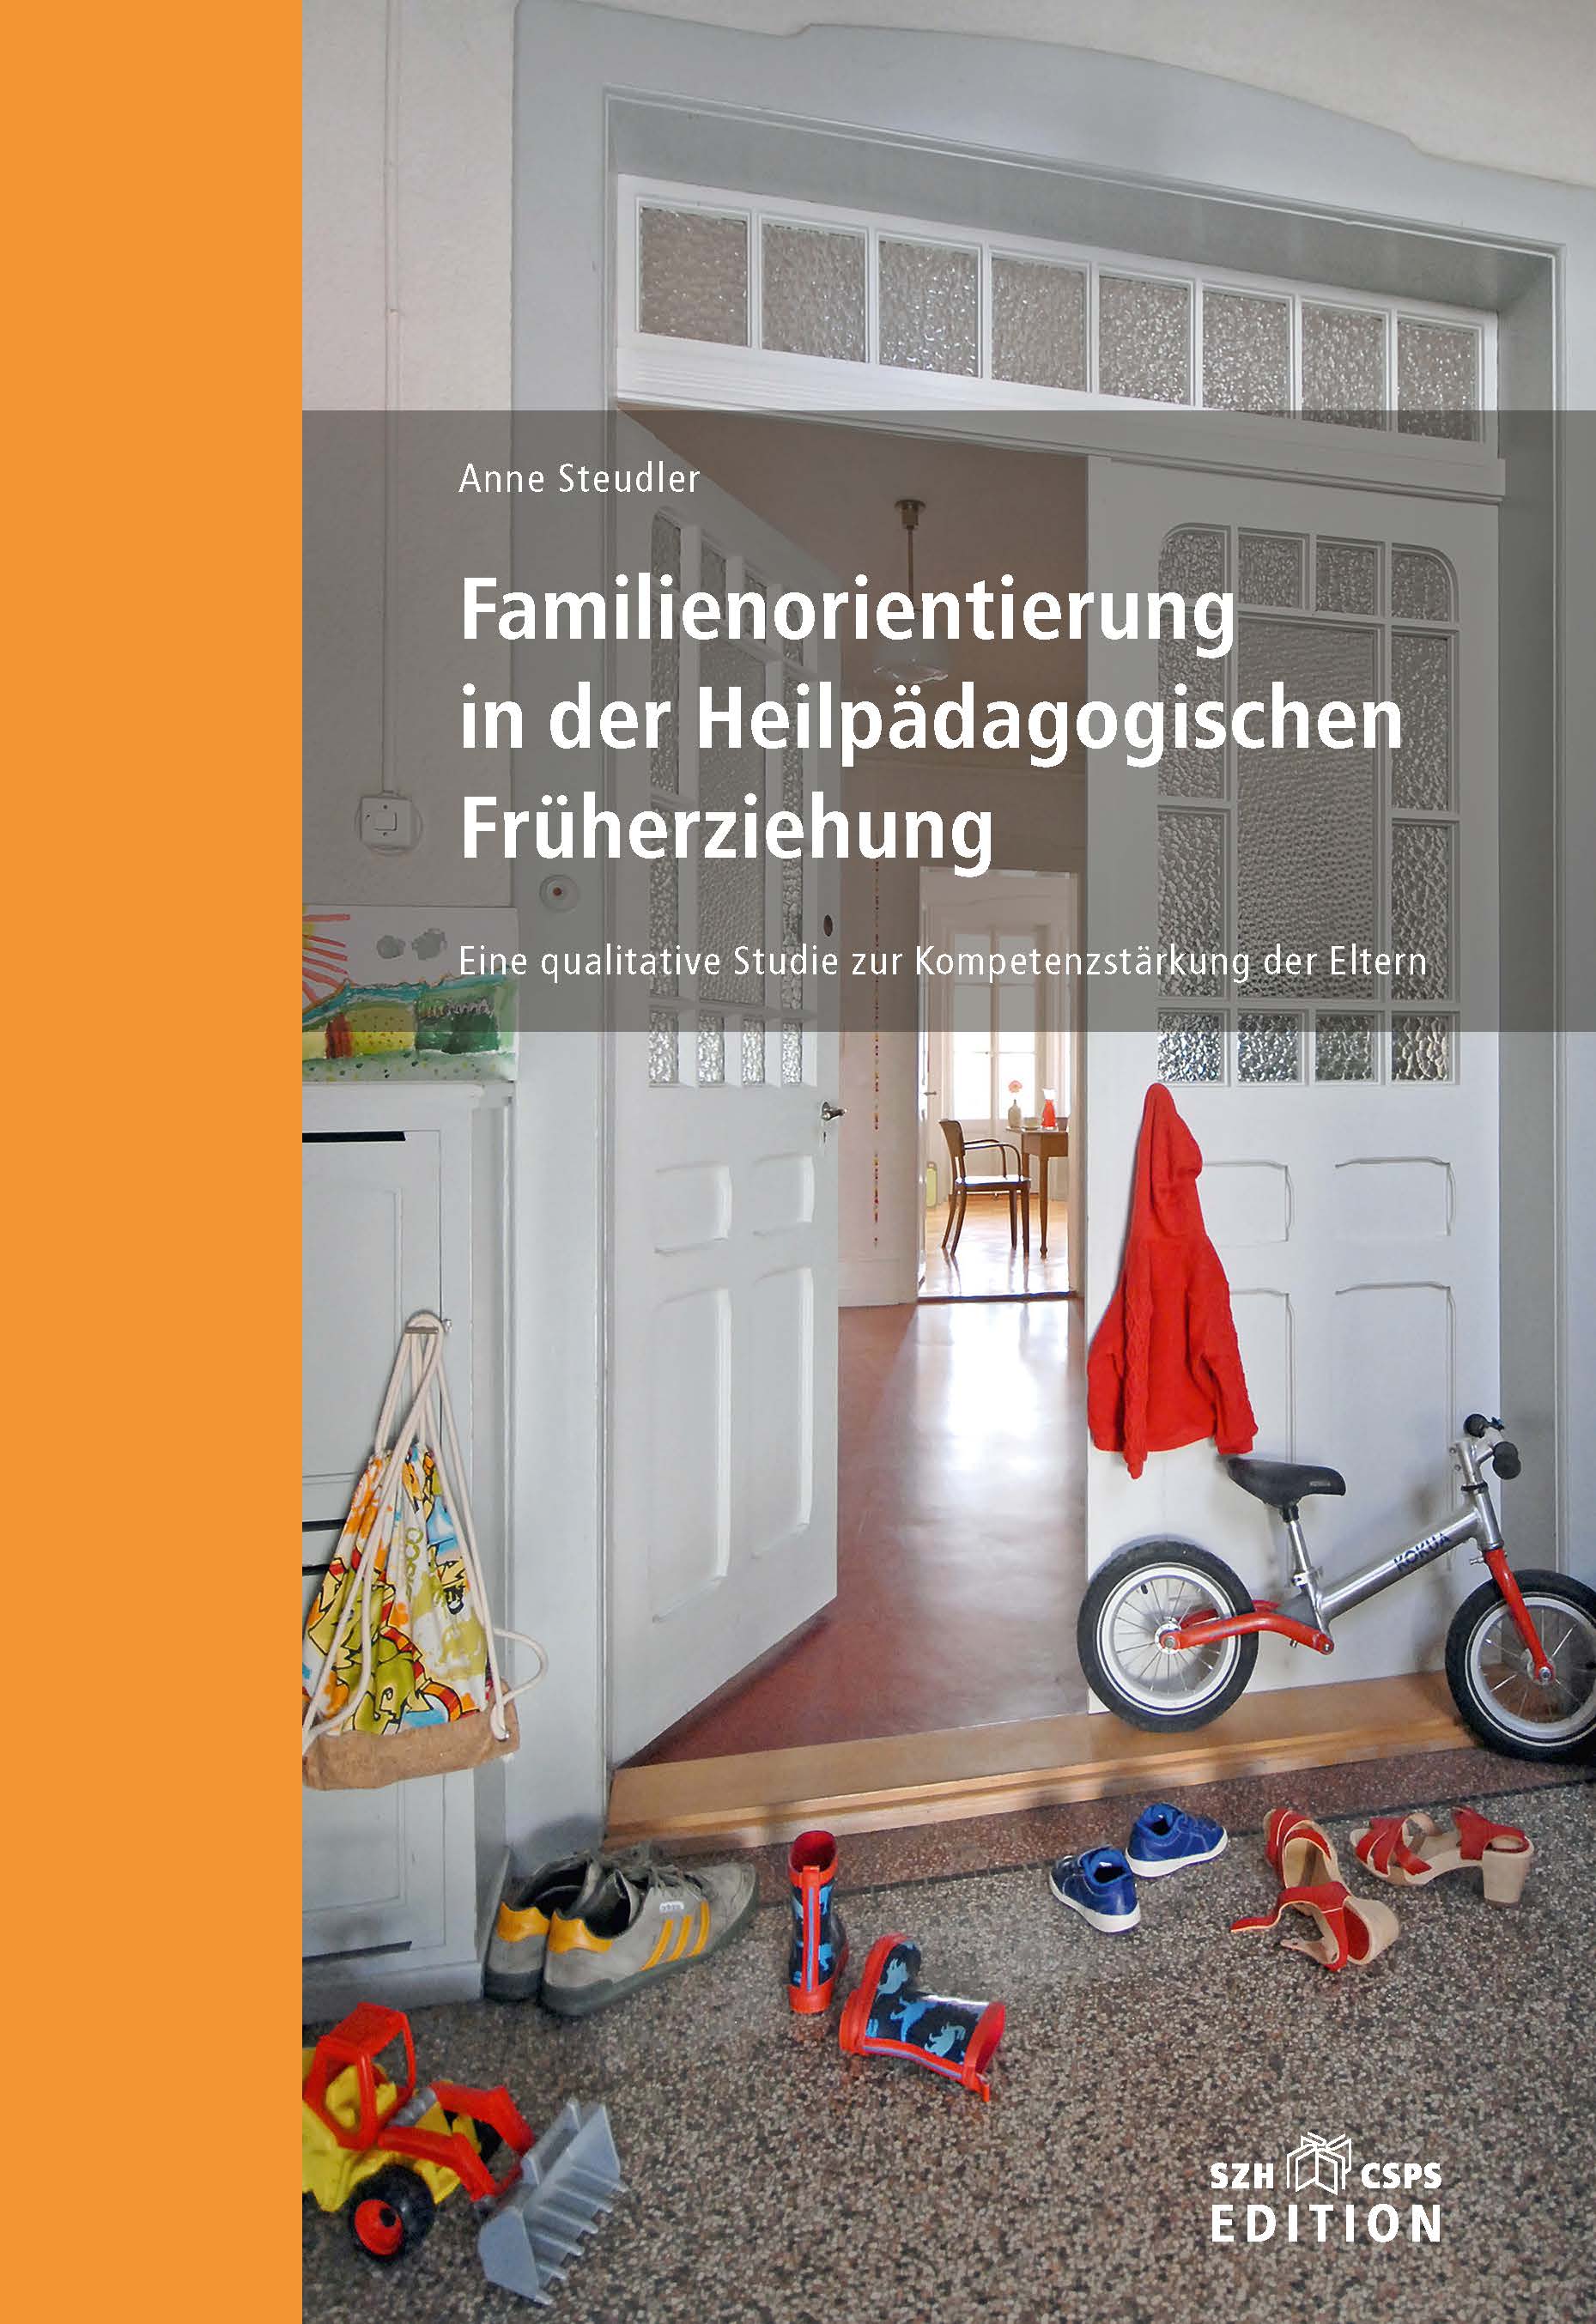  Das Bild zeigt das Buchcover. Darauf sieht man ein Foto von einer Wohnung mit Spielsachen auf dem Boden liegen. 